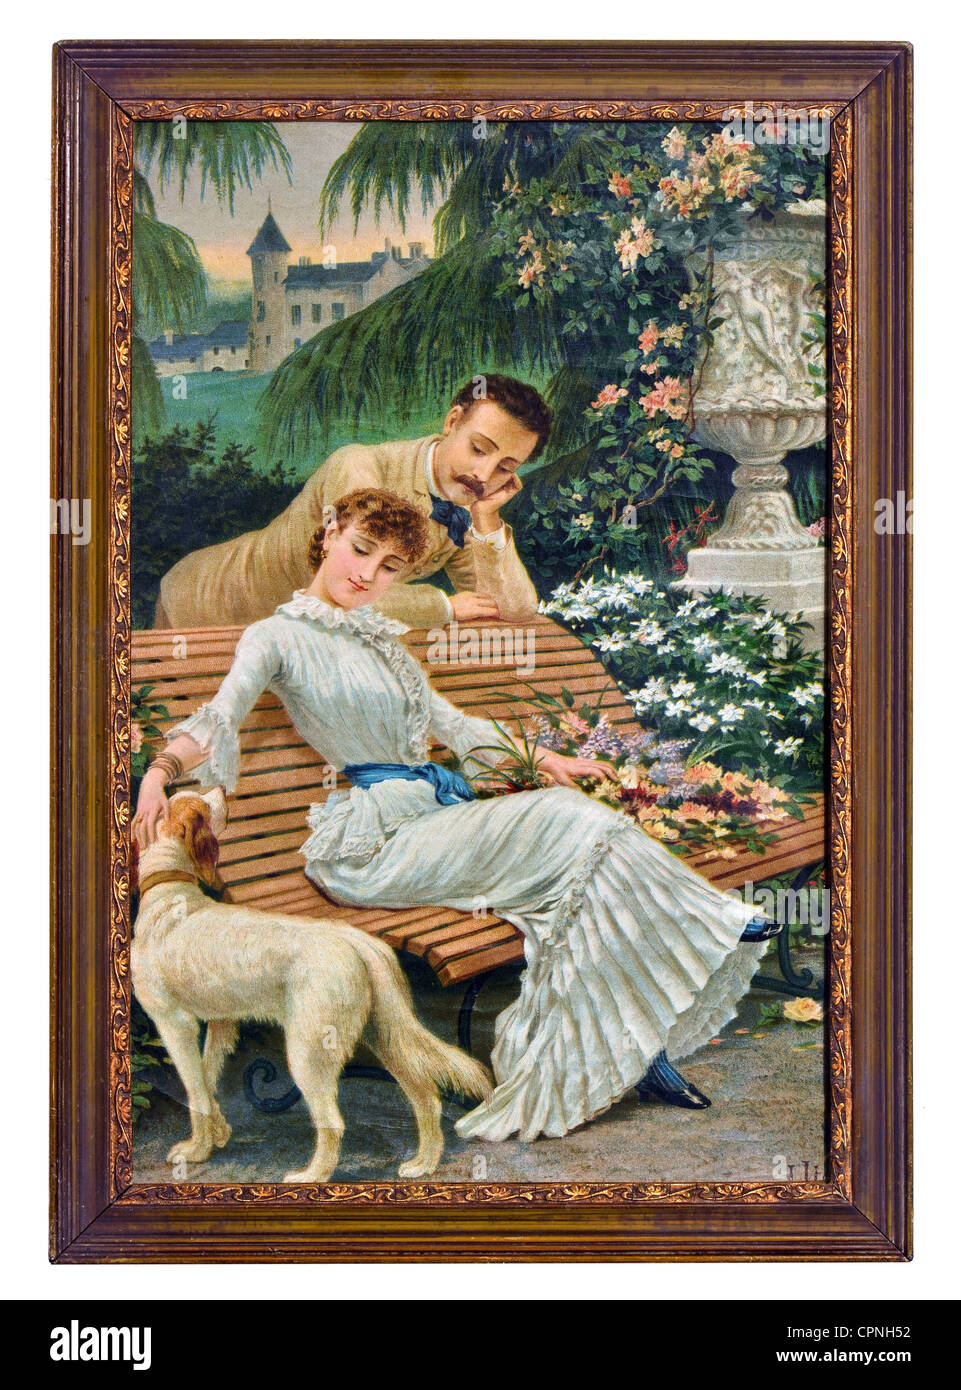 Personnes, couples, amoureux au parc, avec chien, peinture, Allemagne, vers 1905, droits additionnels-Clearences-non disponible Banque D'Images